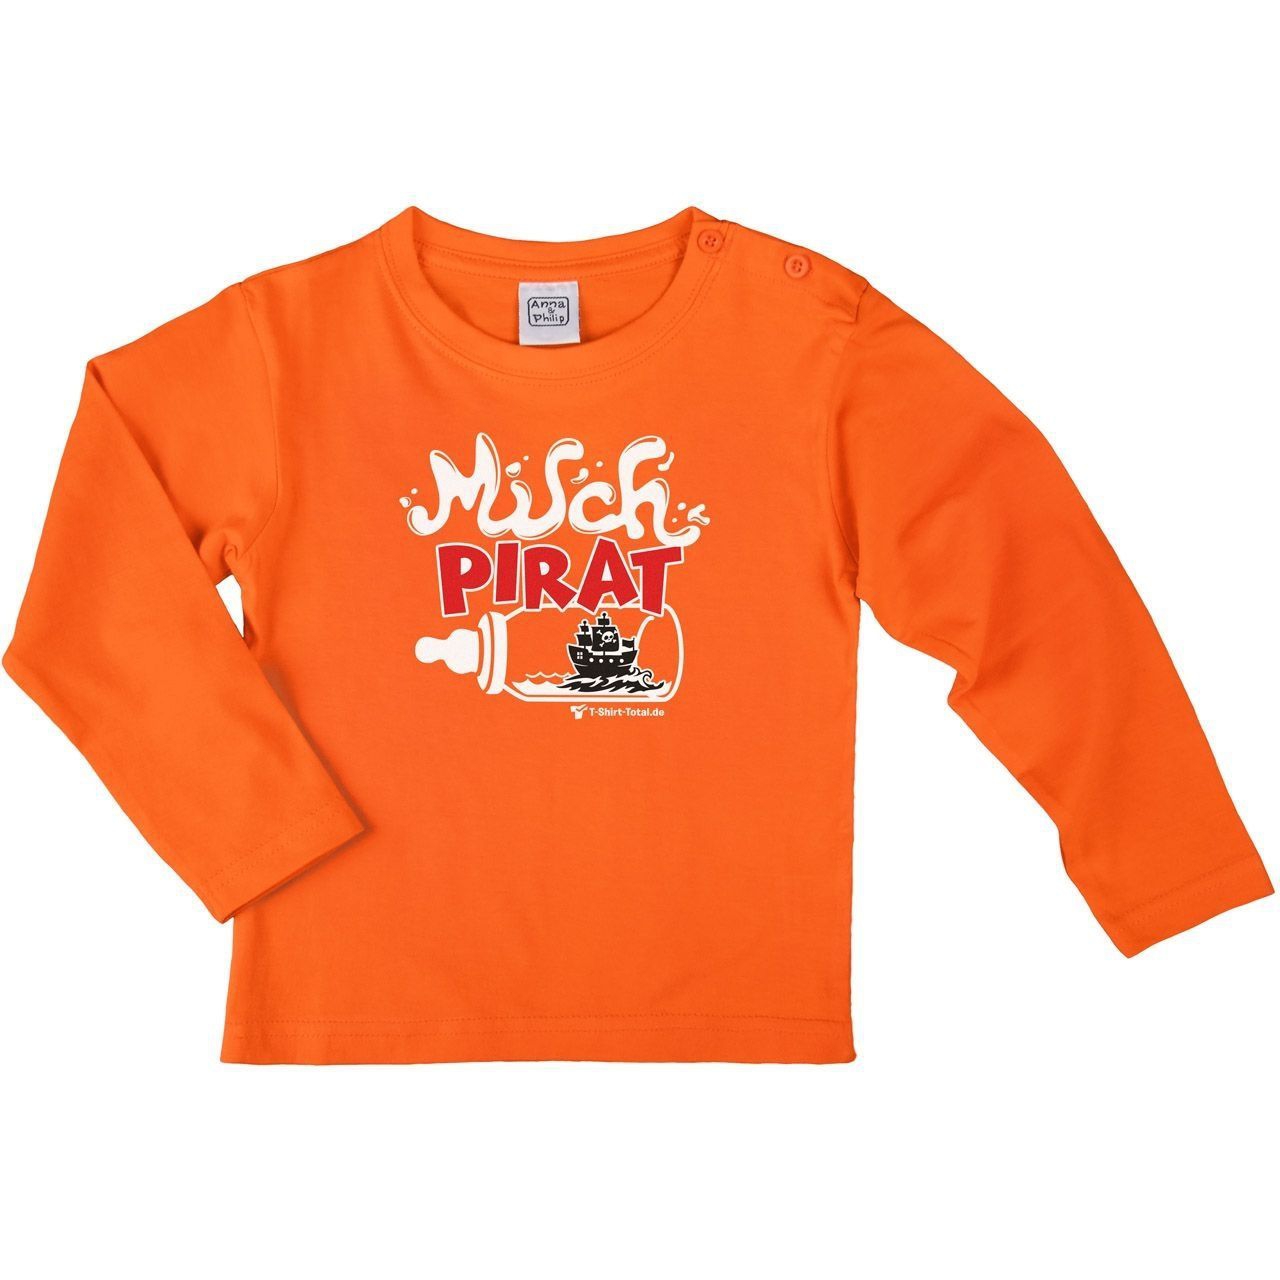 Milch Pirat Kinder Langarm Shirt orange 56 / 62